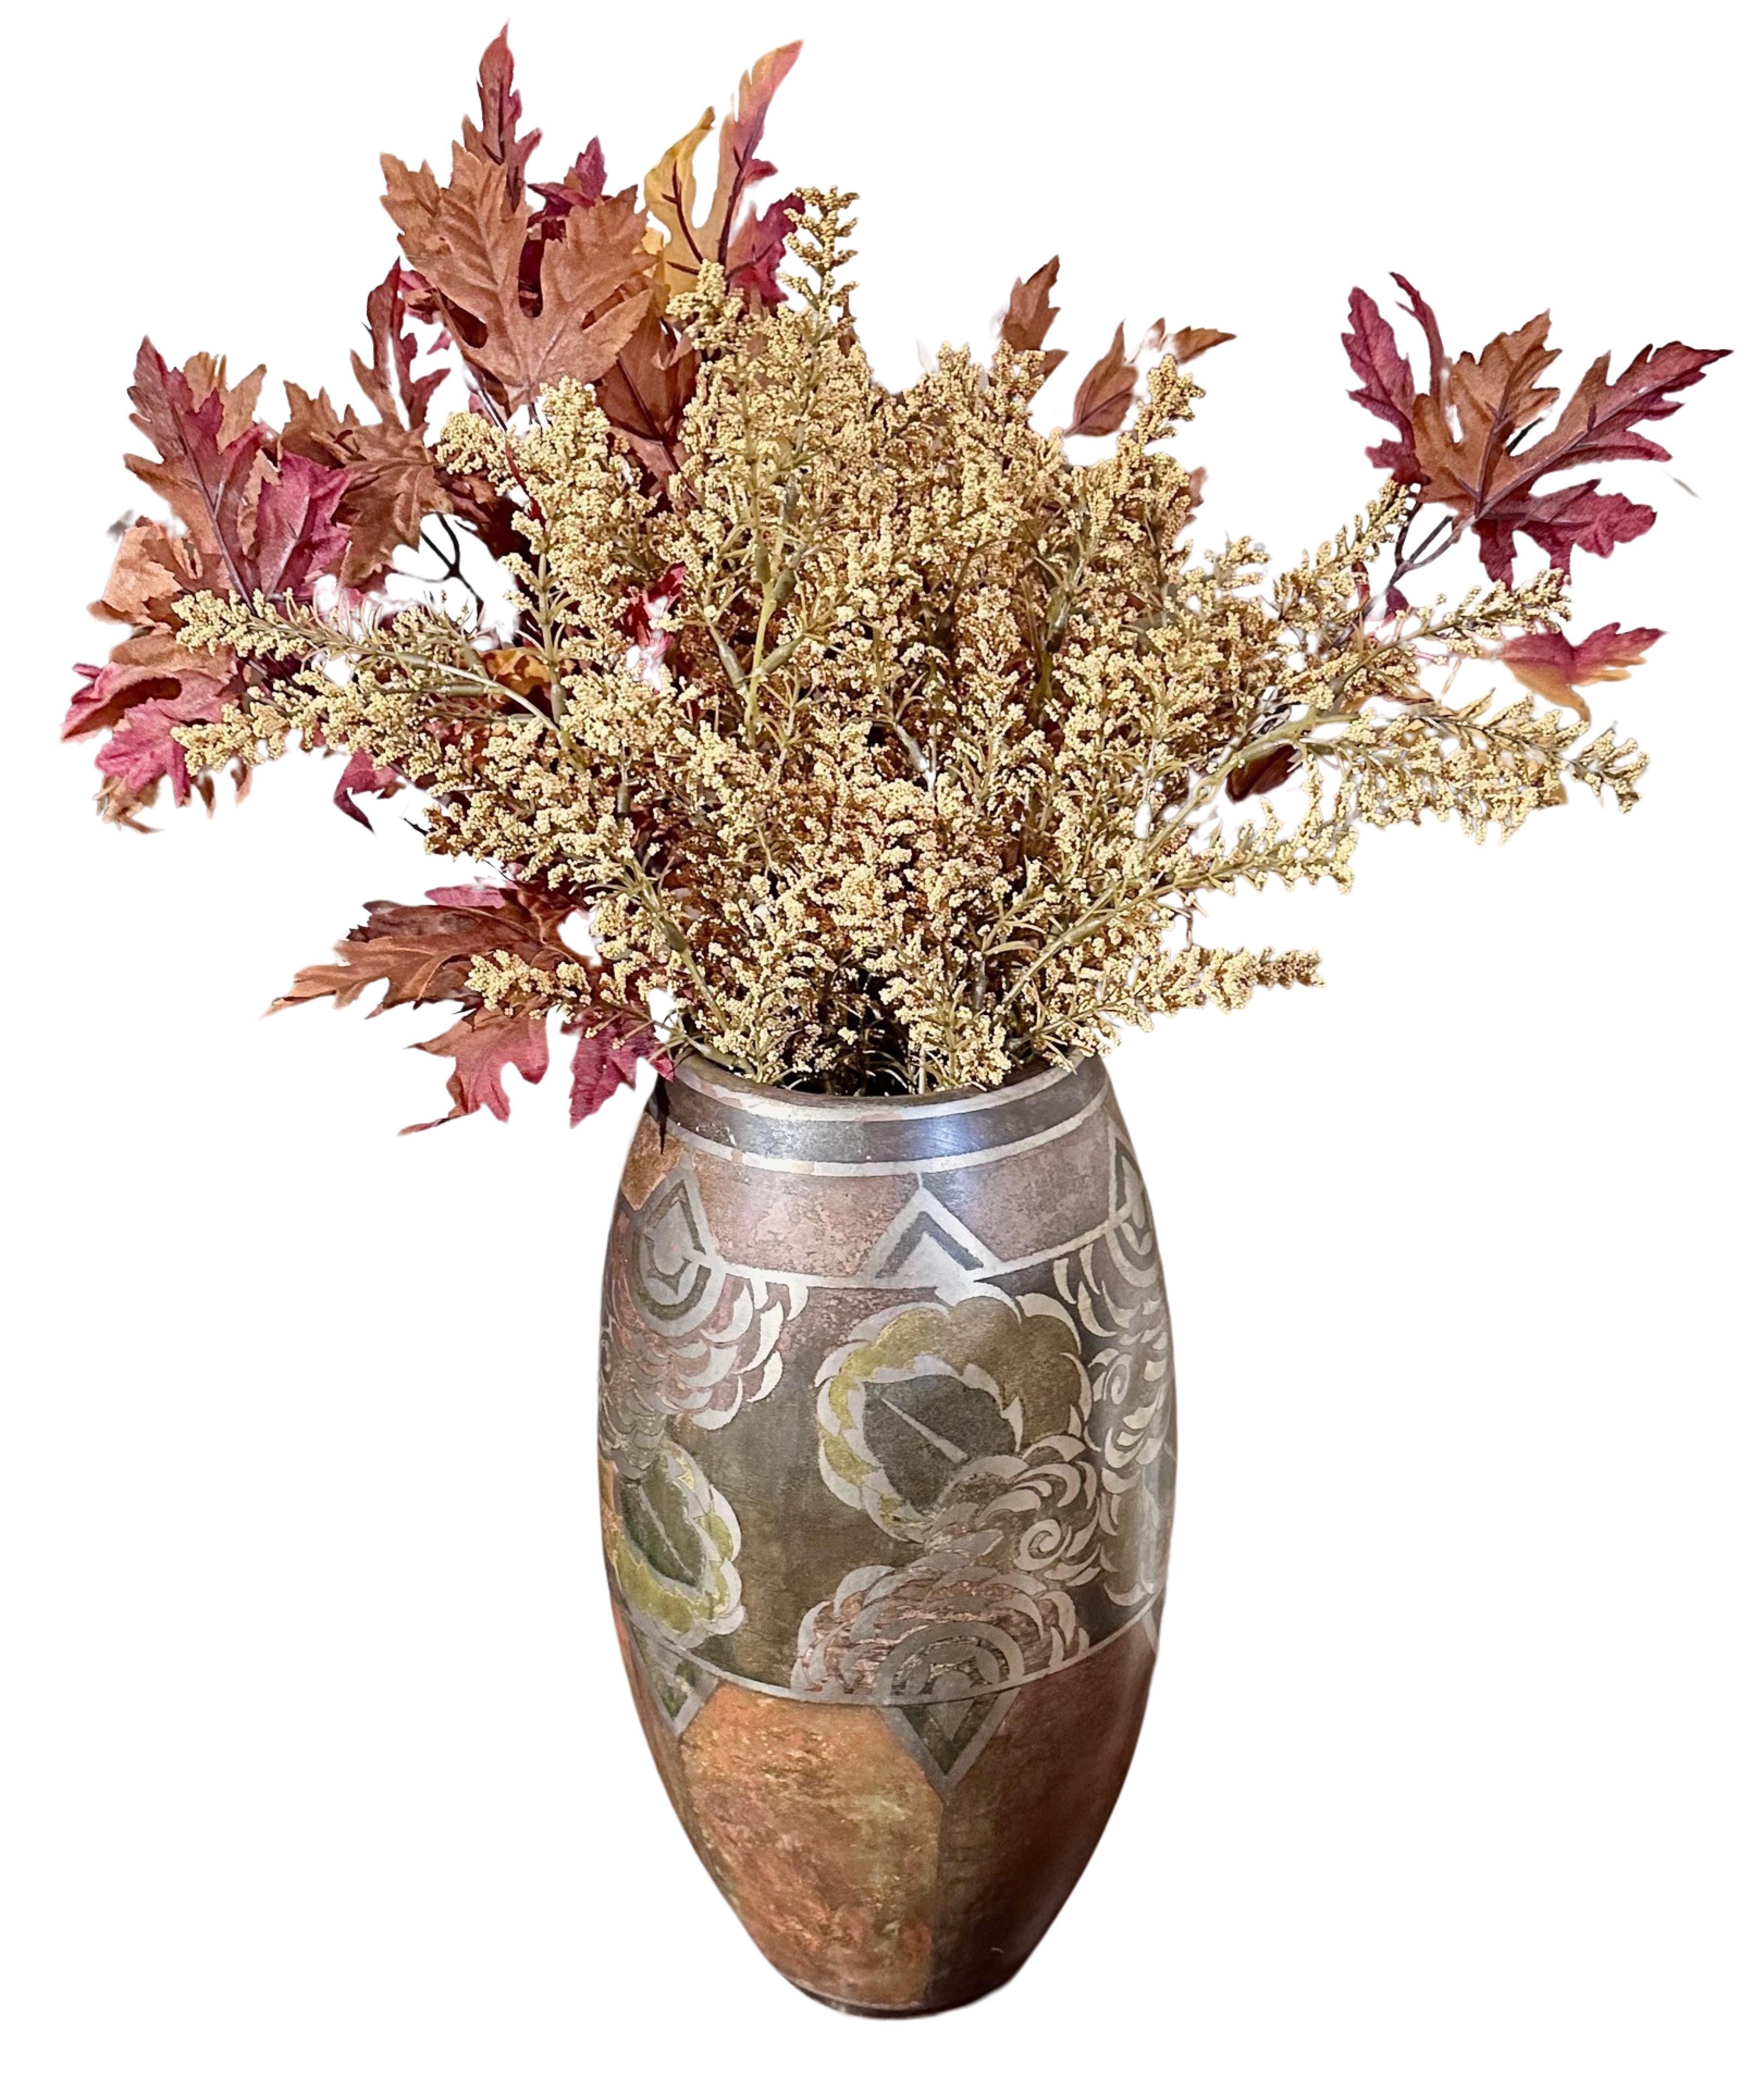 Die Vase Dinanderie des französischen Künstlers Jean Dunand ist eine seltene und ungewöhnliche Vase mit einer Kombination aus abstrakten floralen und geometrischen Motiven. Die mehrschichtige Patina verleiht dieser Vase einen ganz besonderen Stil.  